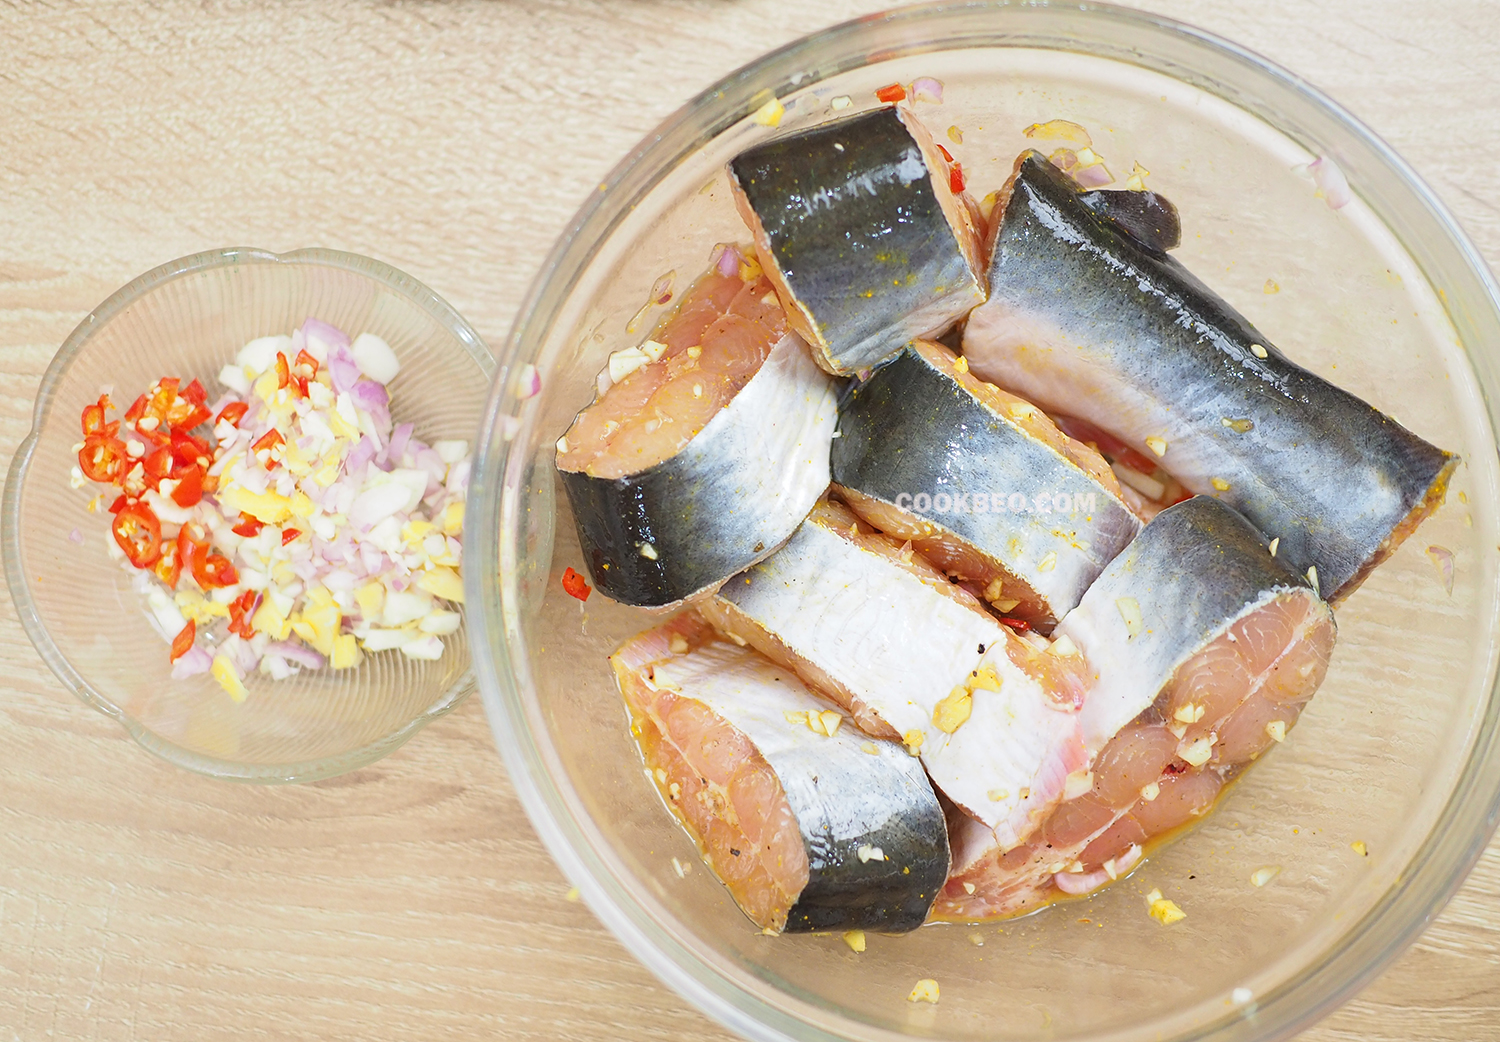 Cho ít hành tỏi gừng và ớt, bột nghệ ướp thêm cùng cá basa cho thơm